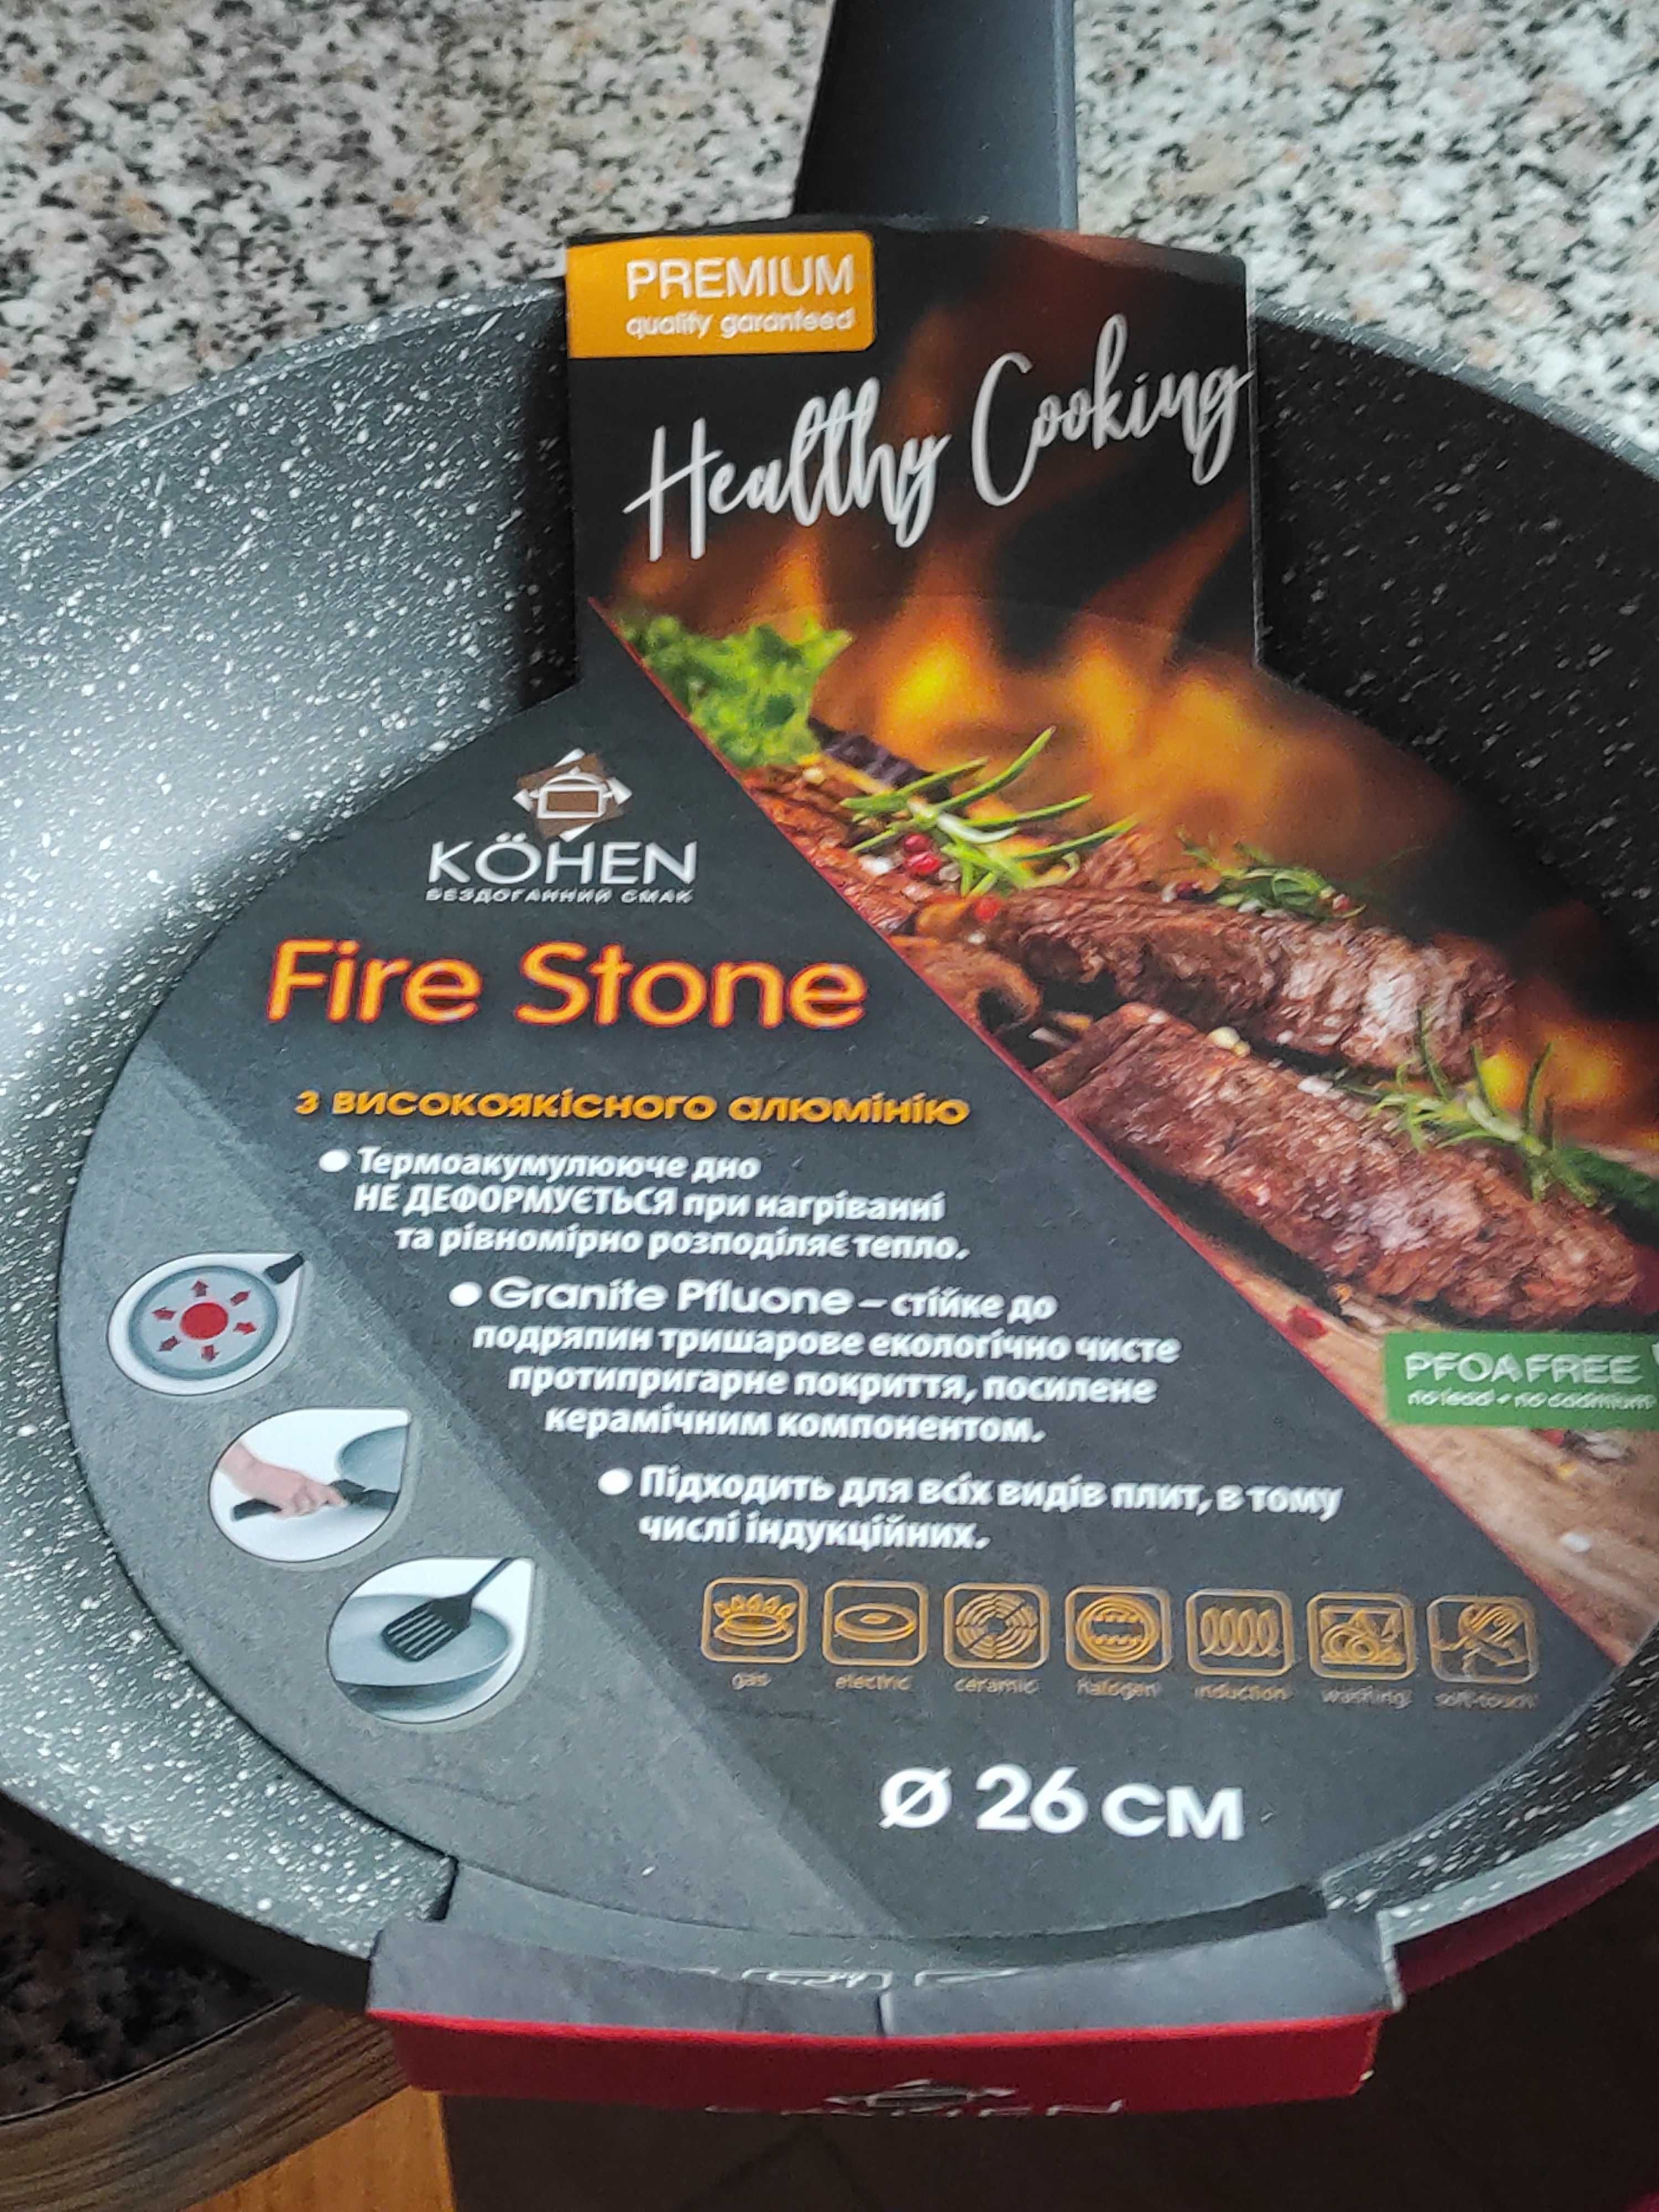 Сковорода Fire Stone Premium 26 cm